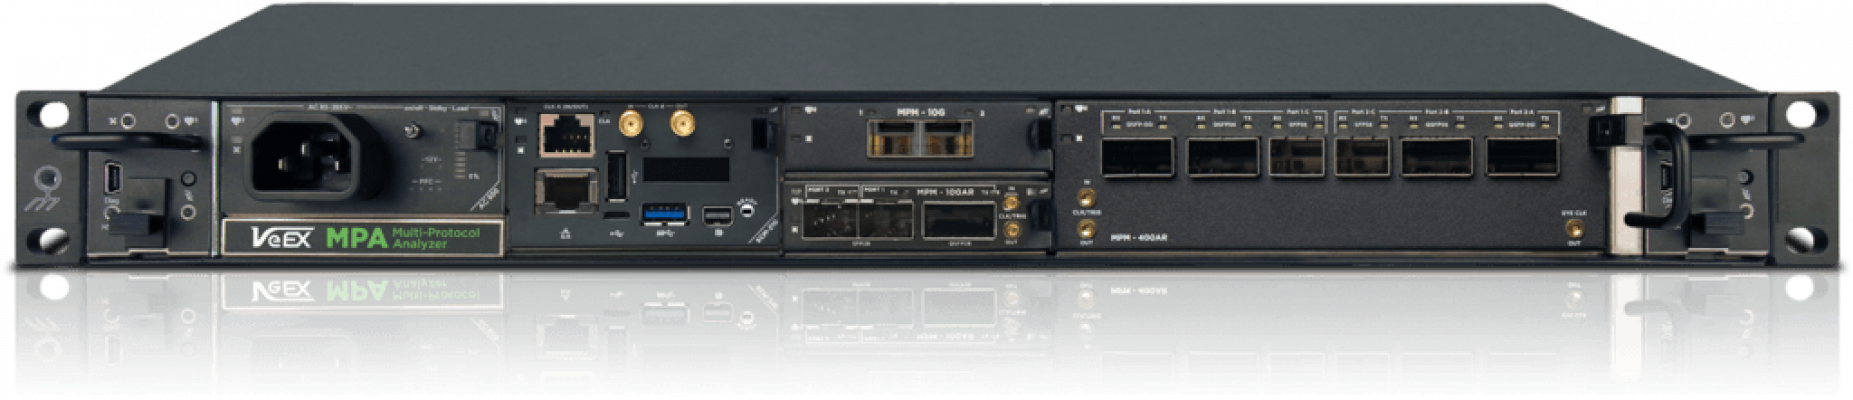 1024-Dual-Port-400GE-QSFP-DD-PAM4-Test-Module-MPM-400AR_01